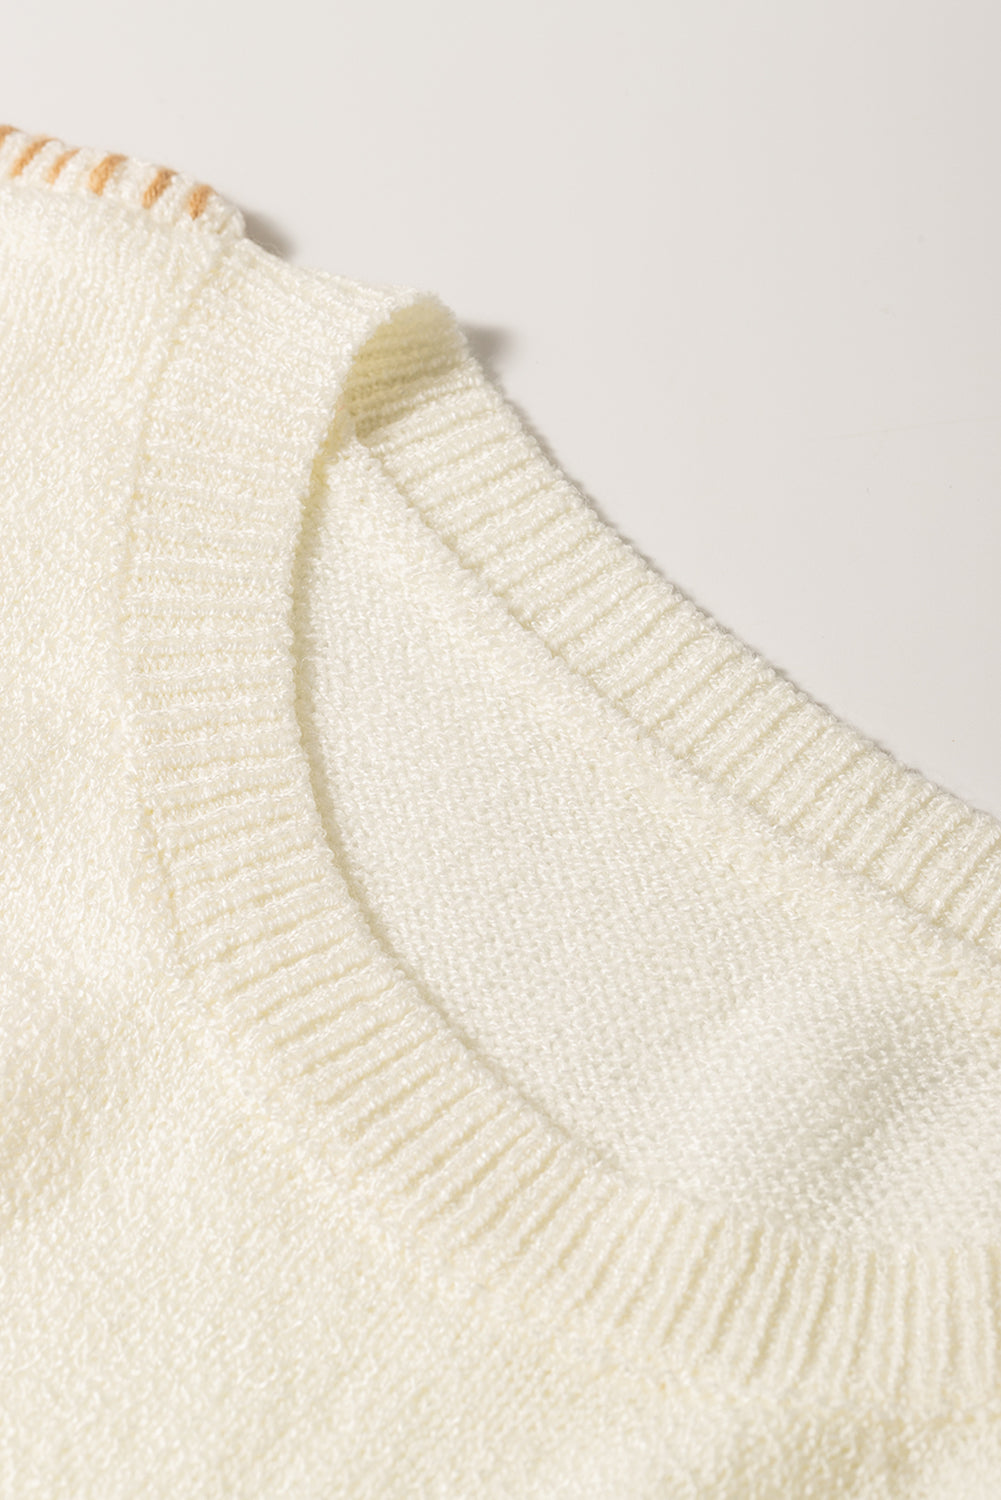 Bež pulover z razkritimi šivi in ​​spuščenimi ramenskimi žepi